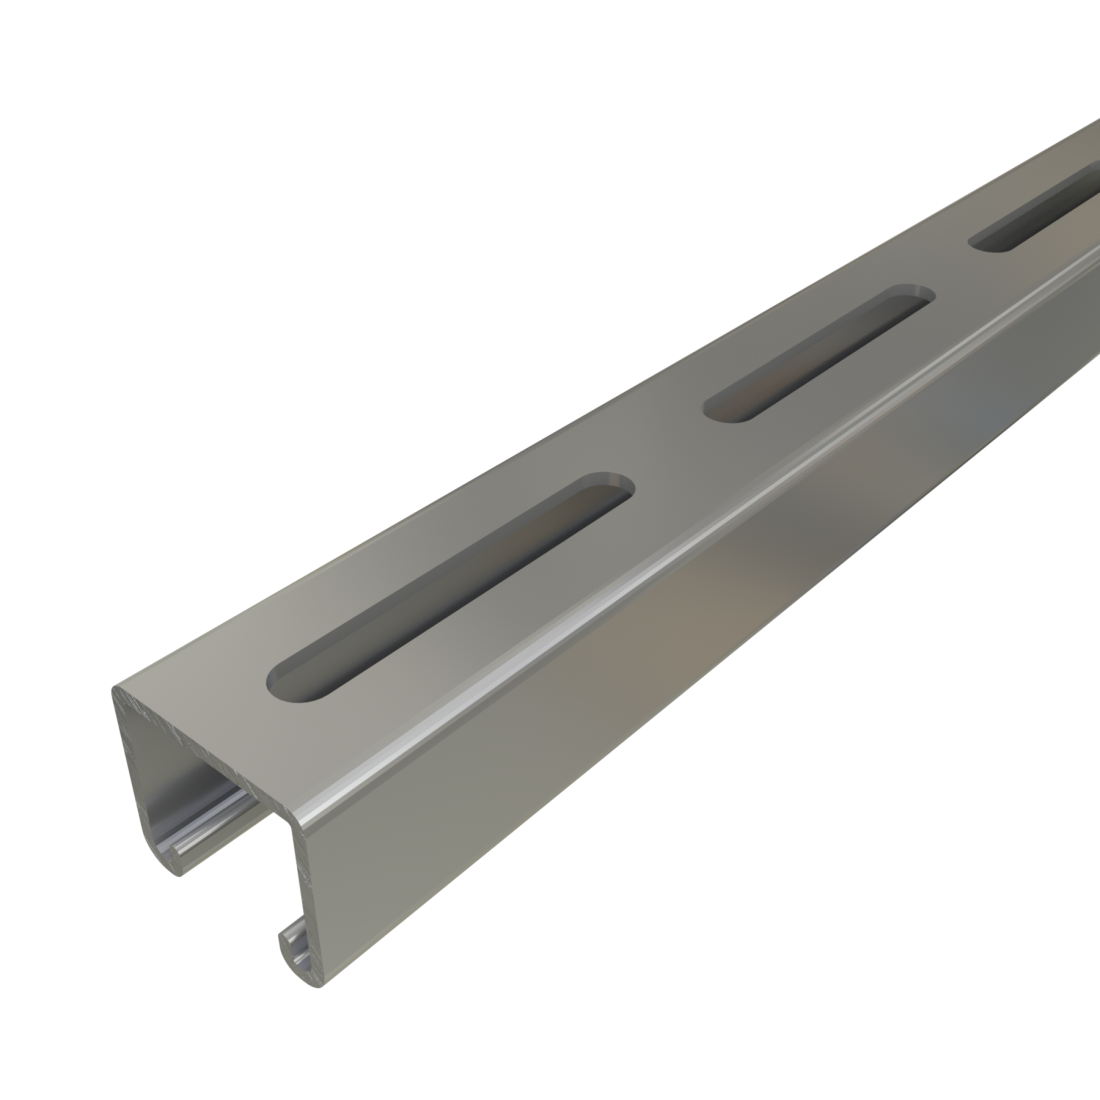 Unistrut P3000SL - 1-5/8" x 1-3/8", 12 Gauge Metal Framing Strut, Long Slots